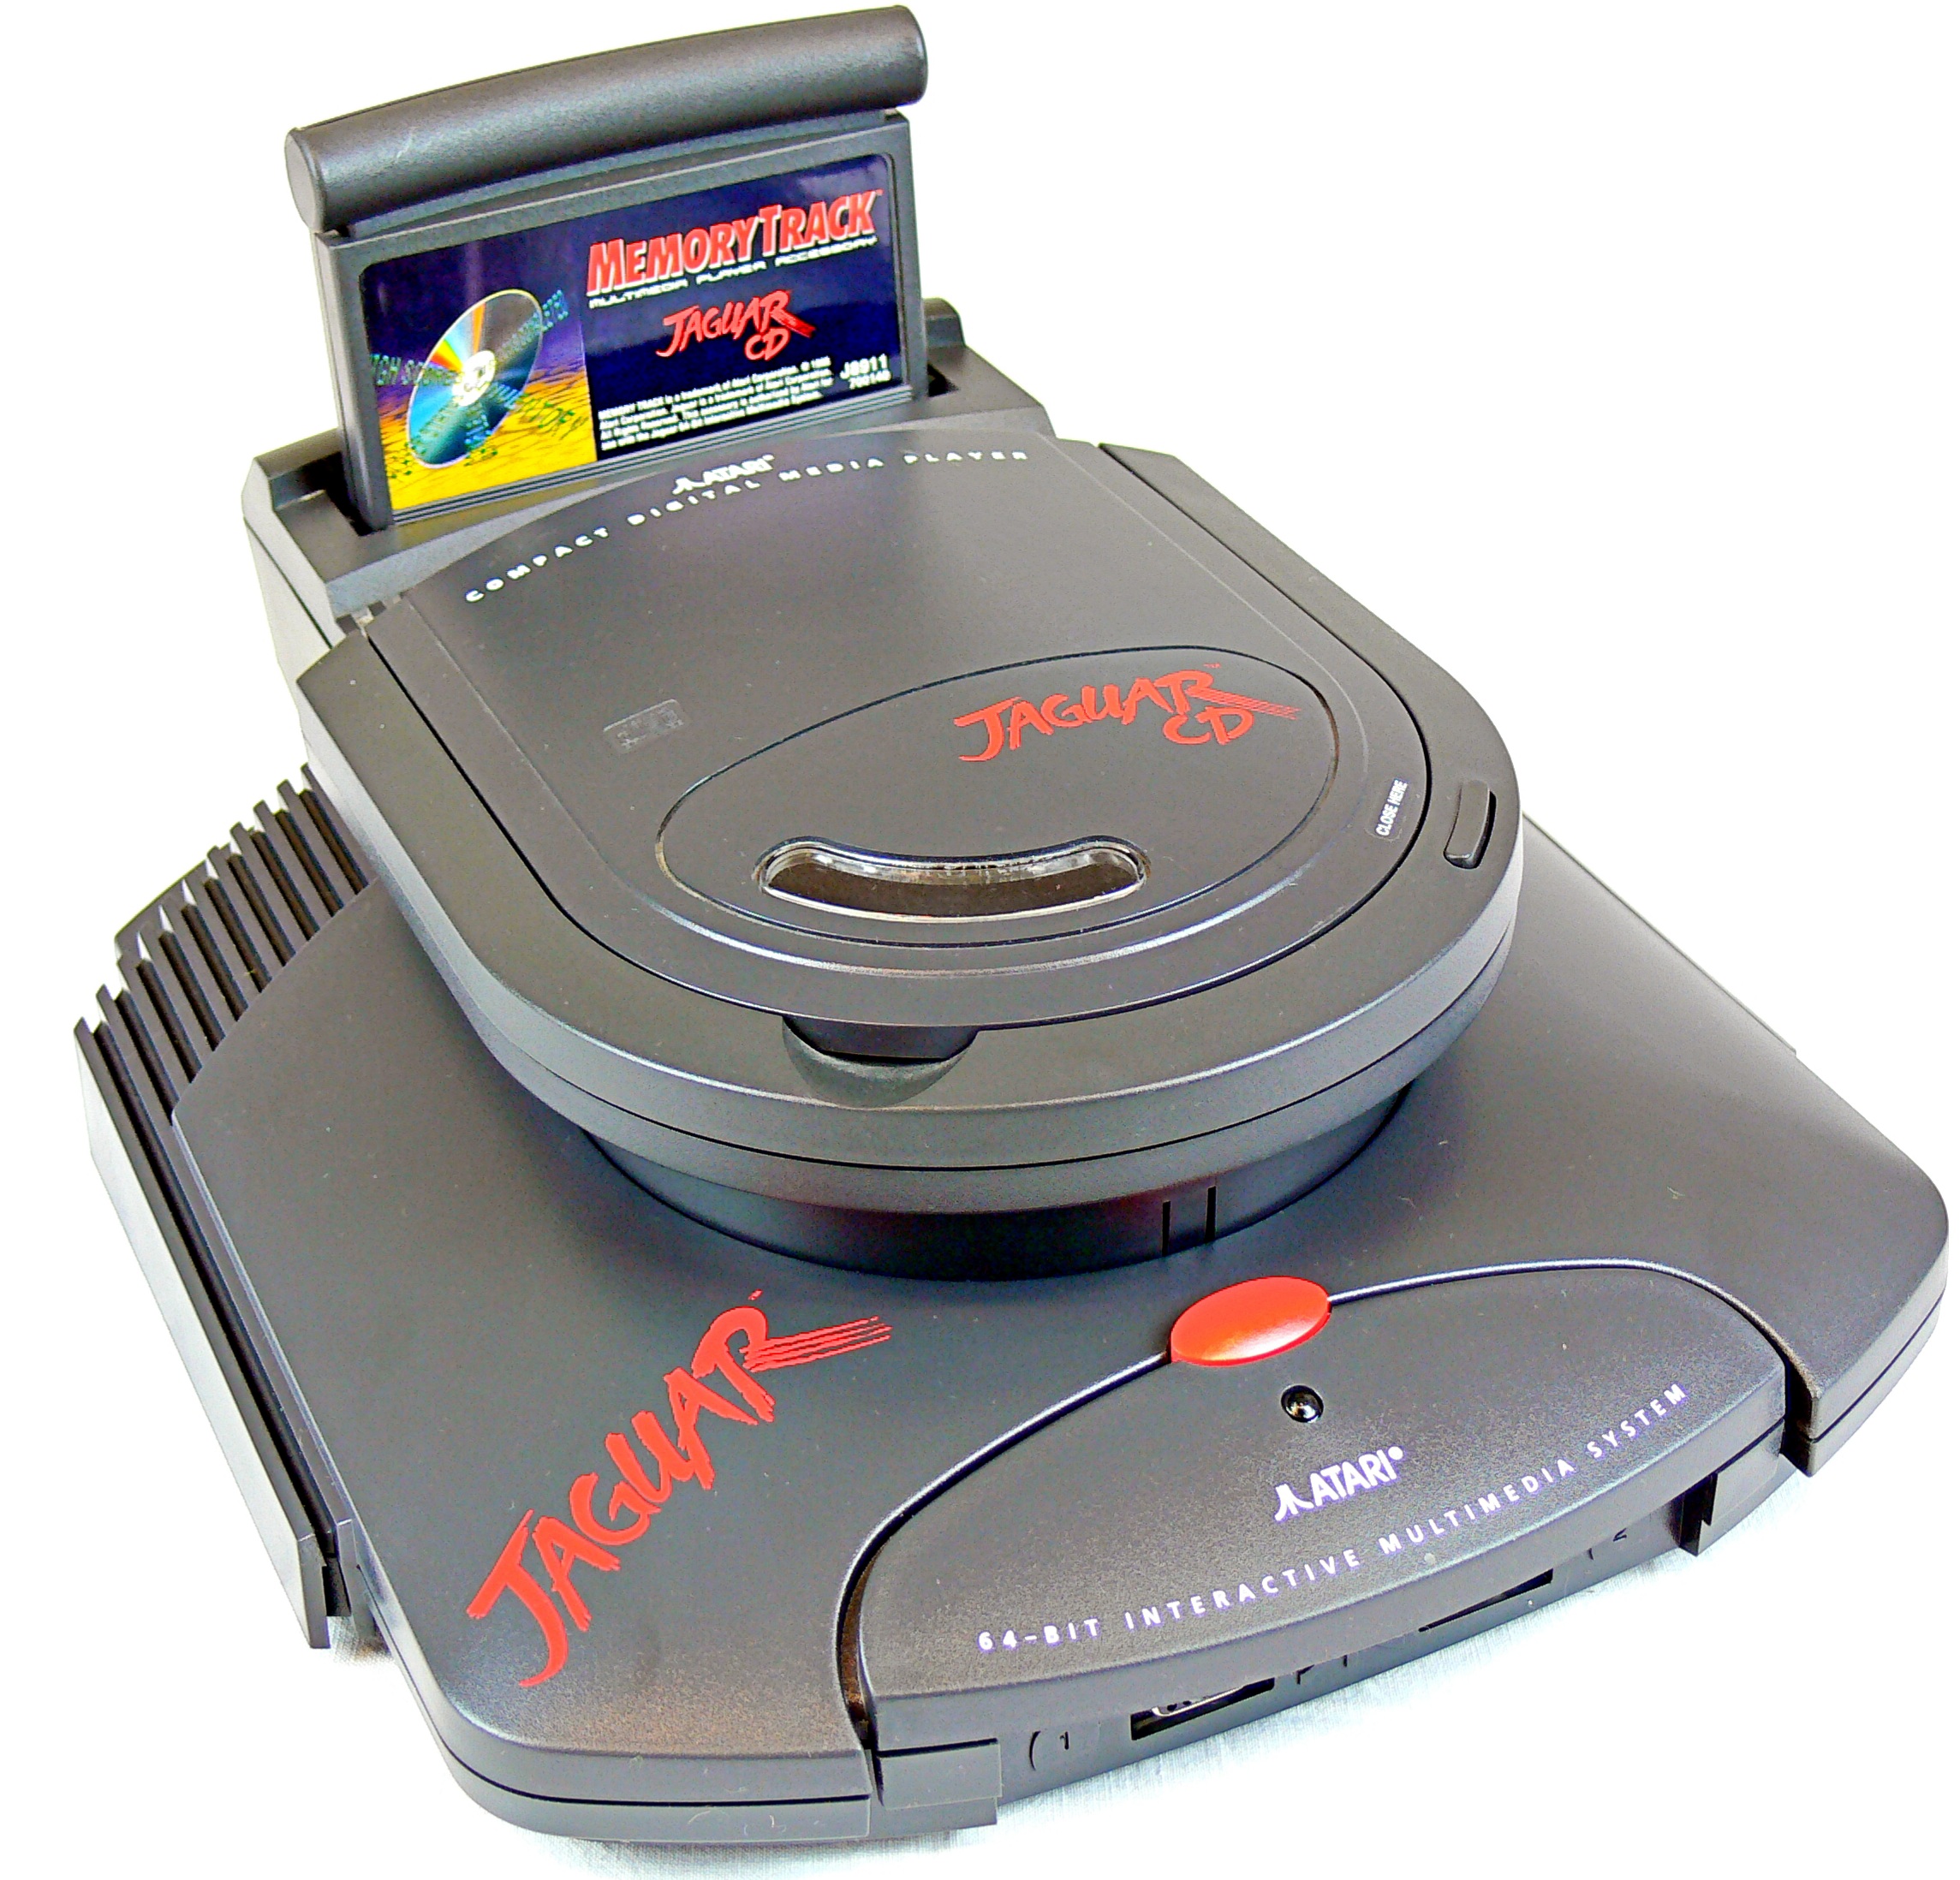 Atari jaguar. Атари Ягуар CD. Игры на Atari Jaguar CD. Atari Jaguar II. Atari Jaguar CD унитаз.